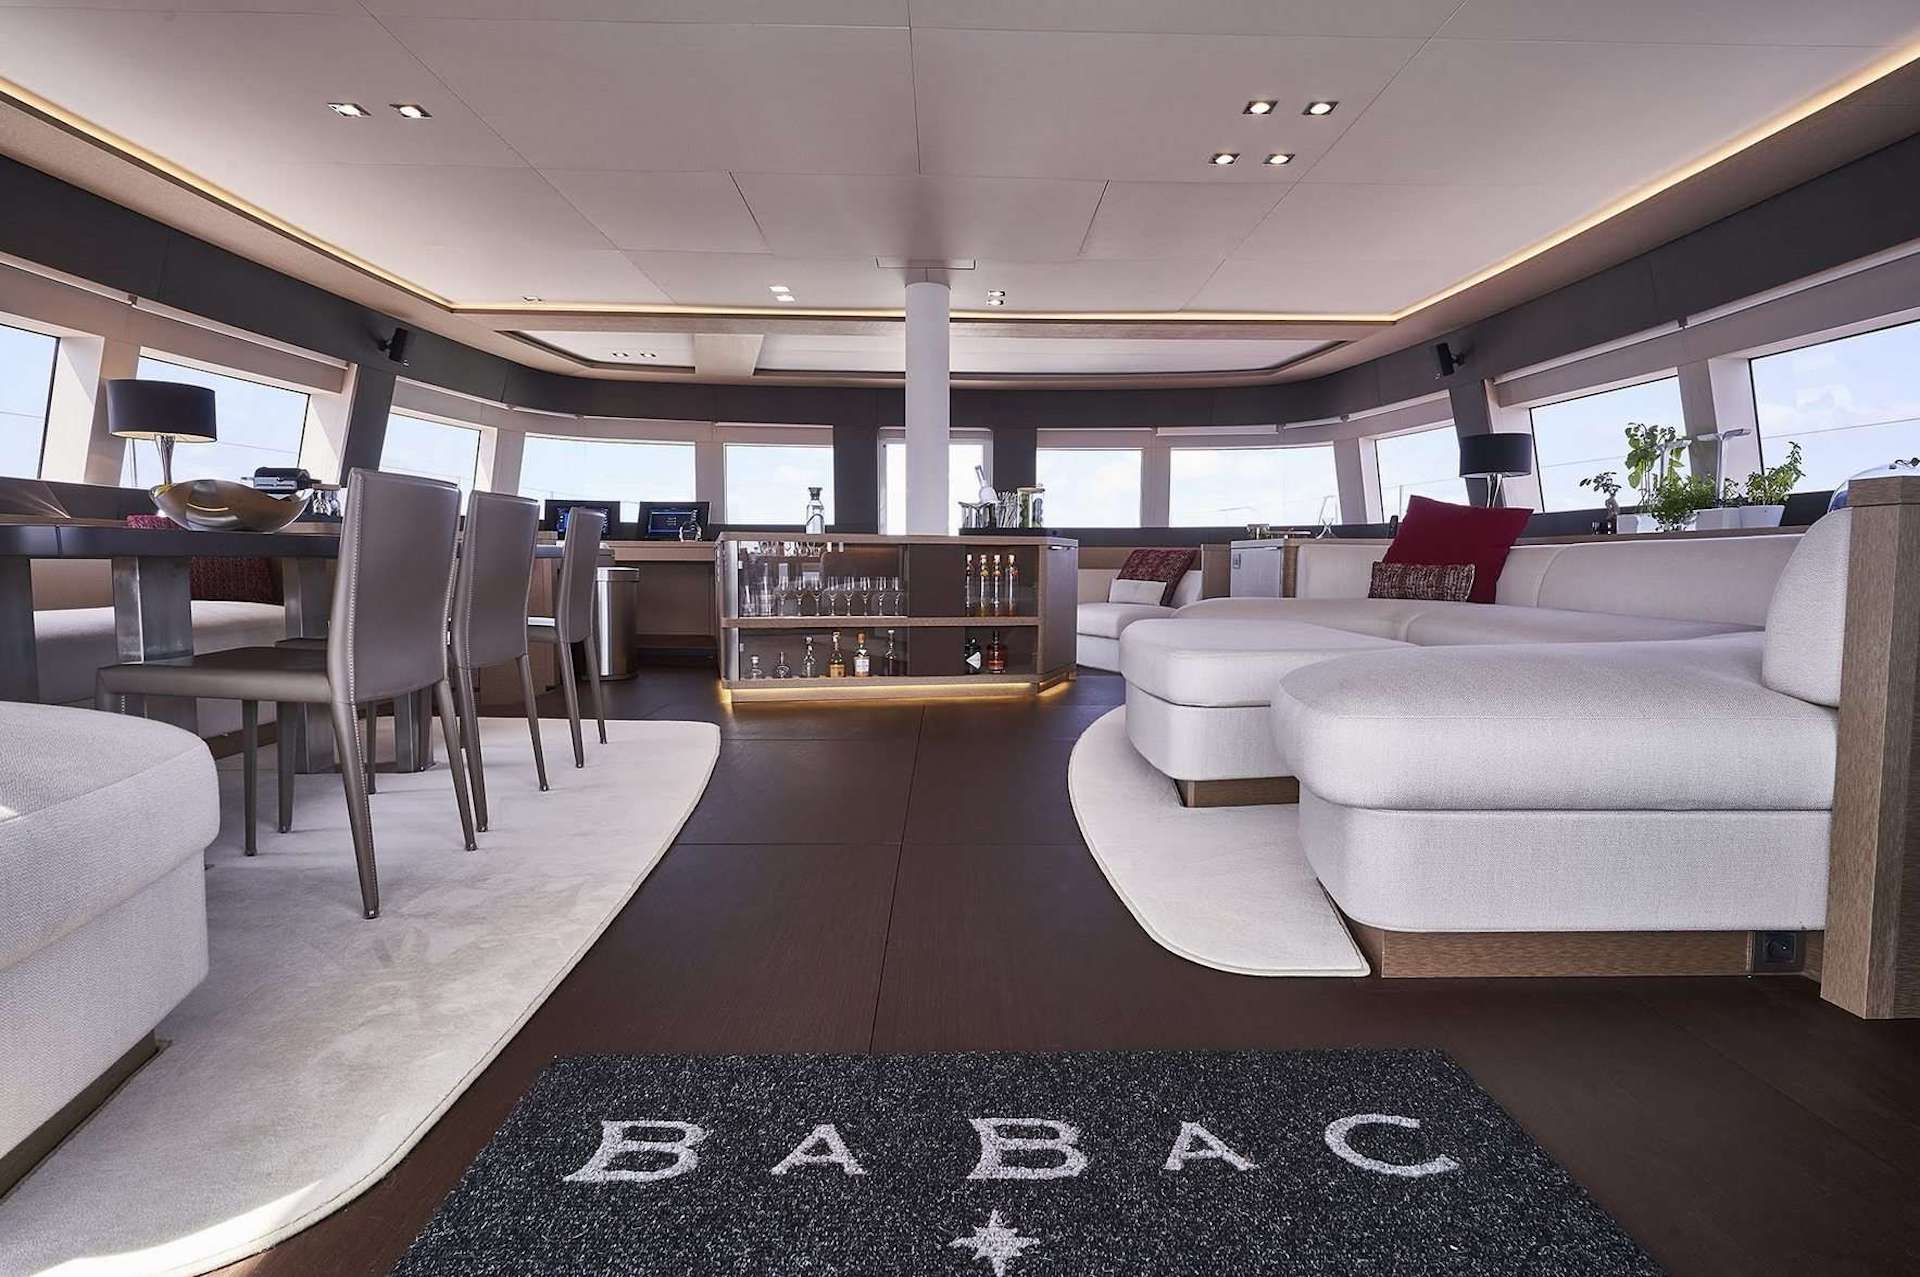 yacht charter Babac salon